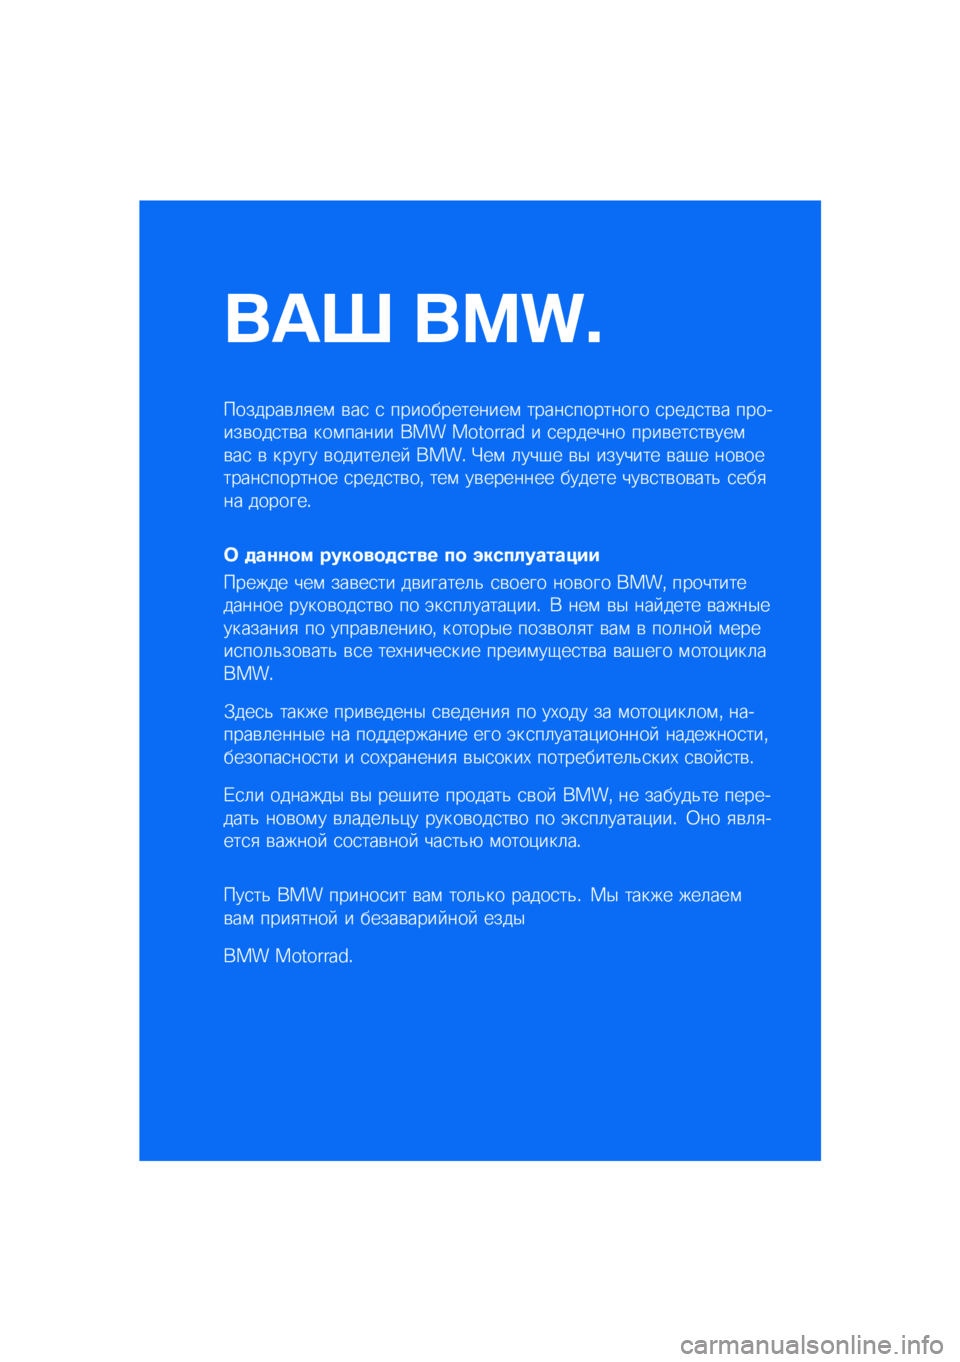 BMW MOTORRAD R NINE T SCRAMBLER 2021  Руководство по эксплуатации (in Russian) ��� ����\b
�������\b�	�
��\f �\b��
 �
 �������������\f �����
�������� �
����
��\b� �������\b���
��\b� ���\f����� ��� �������� � 